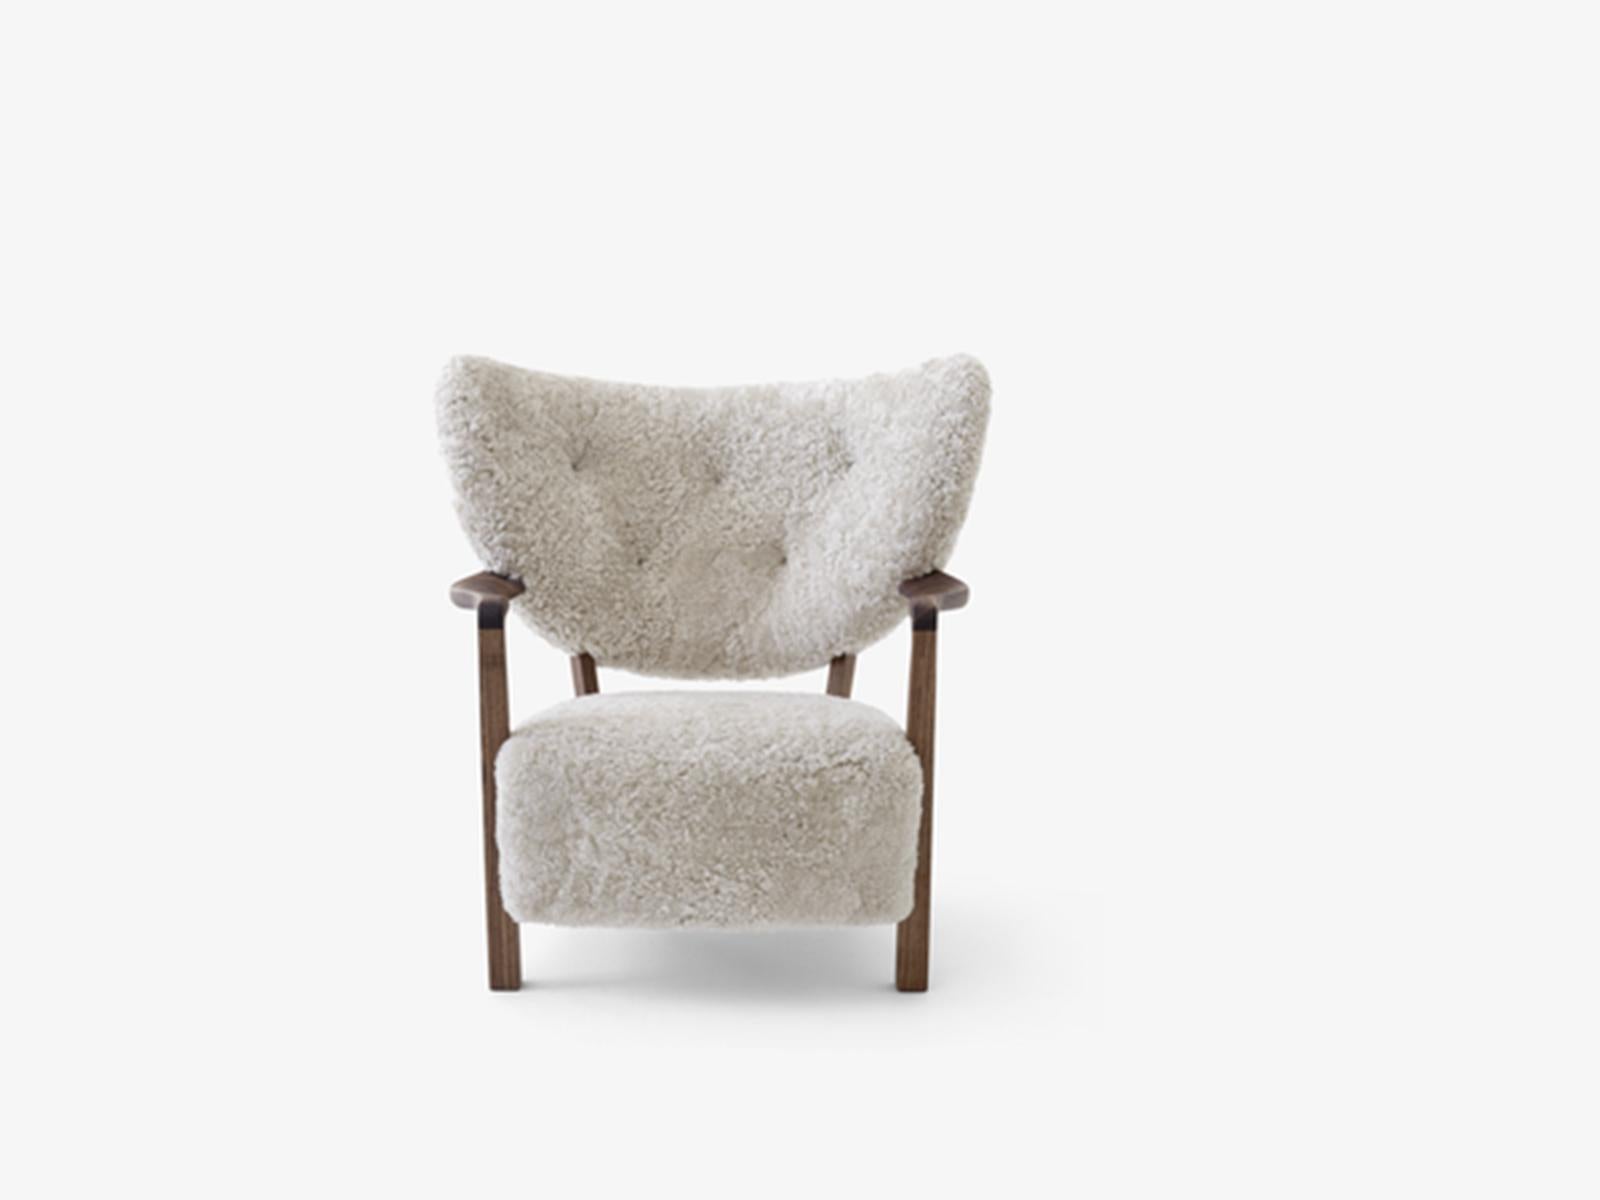 Voici Wulff, un fauteuil de salon dont la forme rembourrée rend hommage aux modèles artisanaux des années 1930. 
Wulff promet une qualité de fabrication supérieure et un confort exceptionnel grâce au rembourrage luxueusement doux qui recouvre son